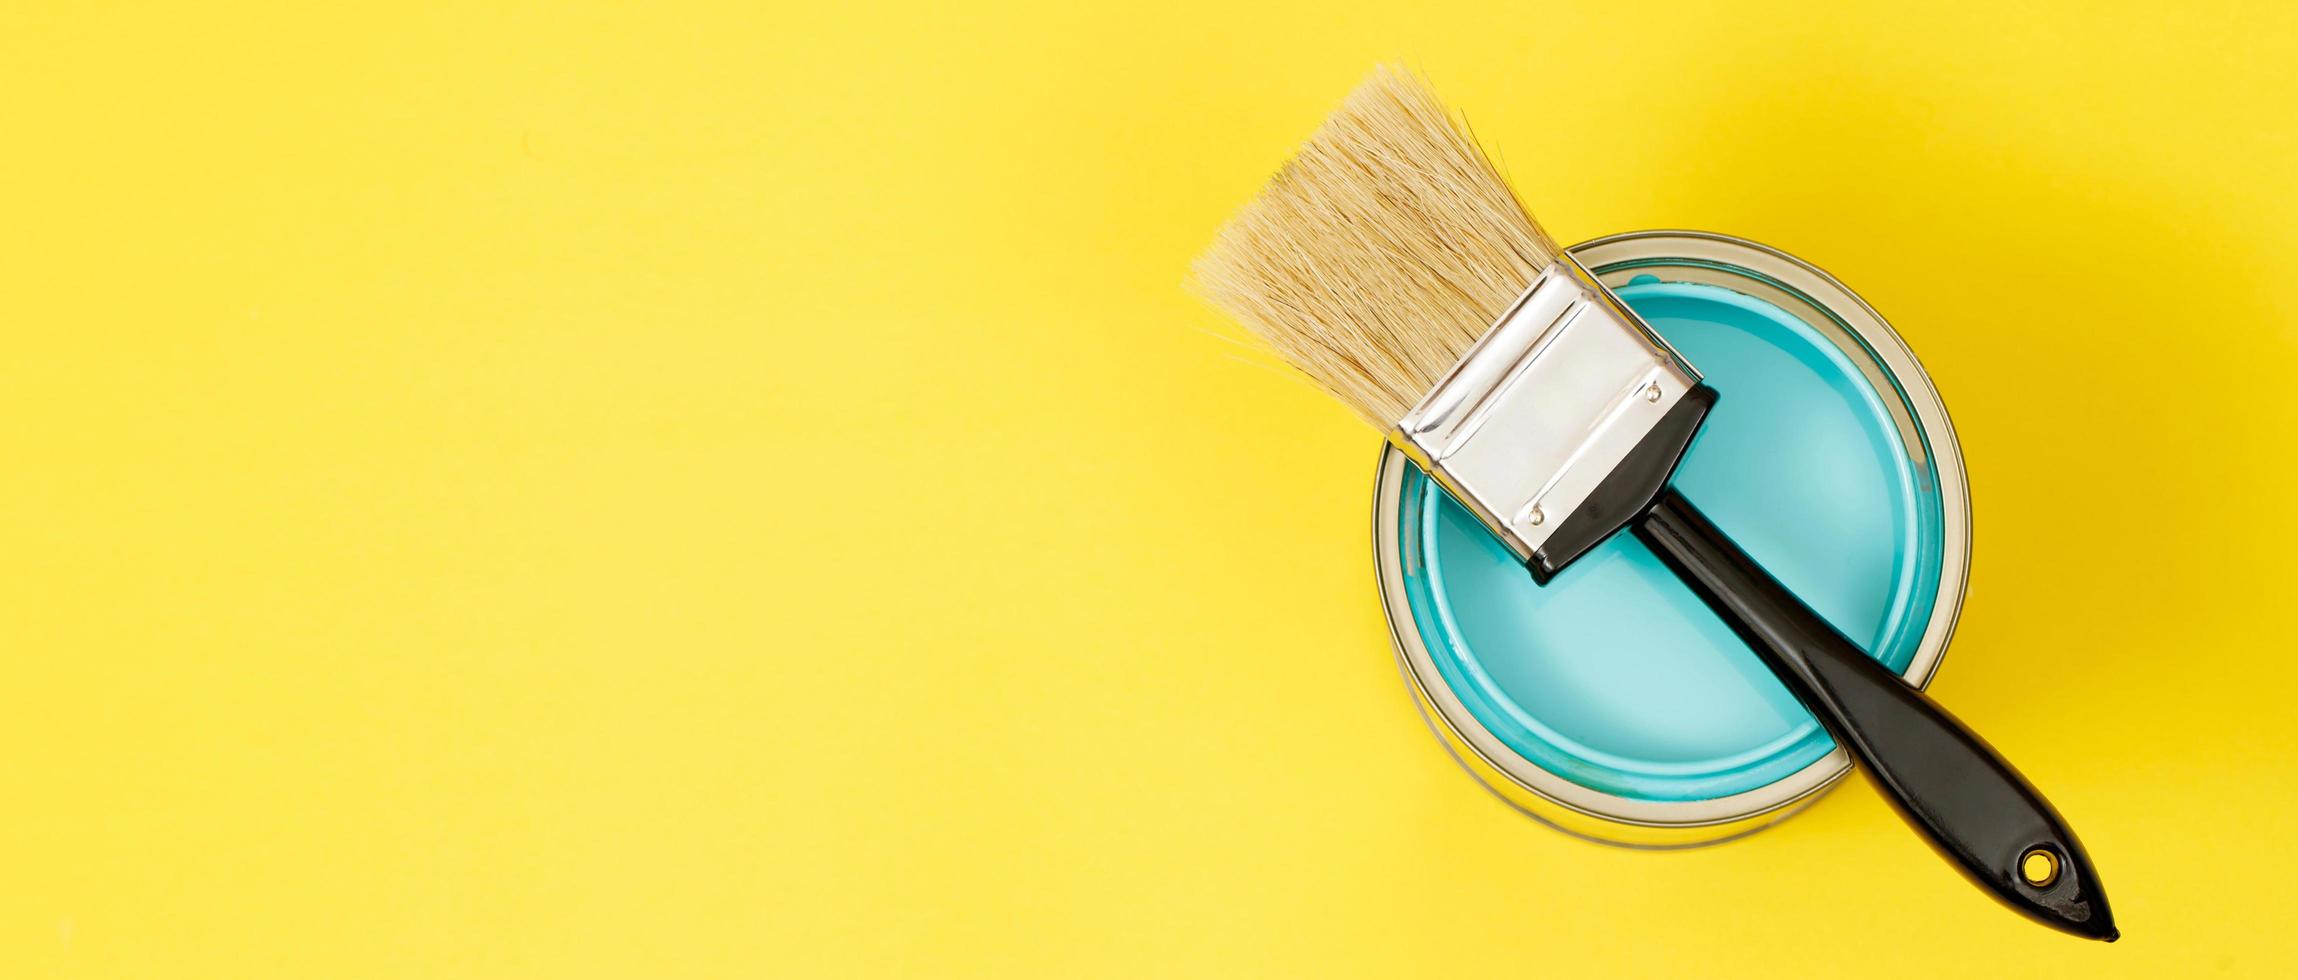 måla burkar och måla borstar och på vilket sätt till välja de perfekt interiör måla Färg och Bra för hälsa foto